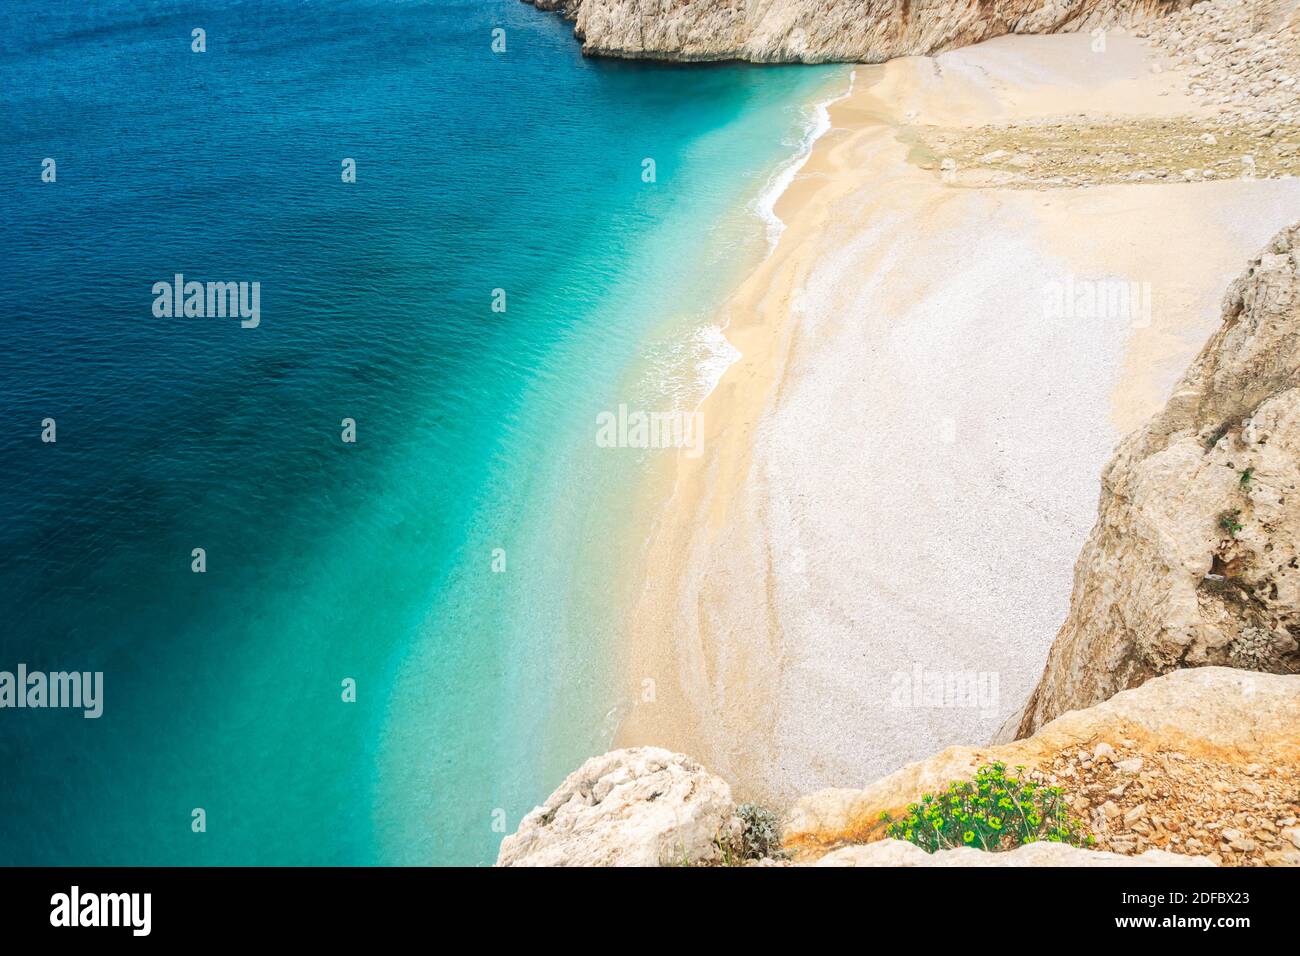 Plage de Kaputas, côte de Lycia et mer Méditerranée à Kas, Kalkan, Antalya, Turquie. Méthode Lycienne. Concept été et vacances Banque D'Images